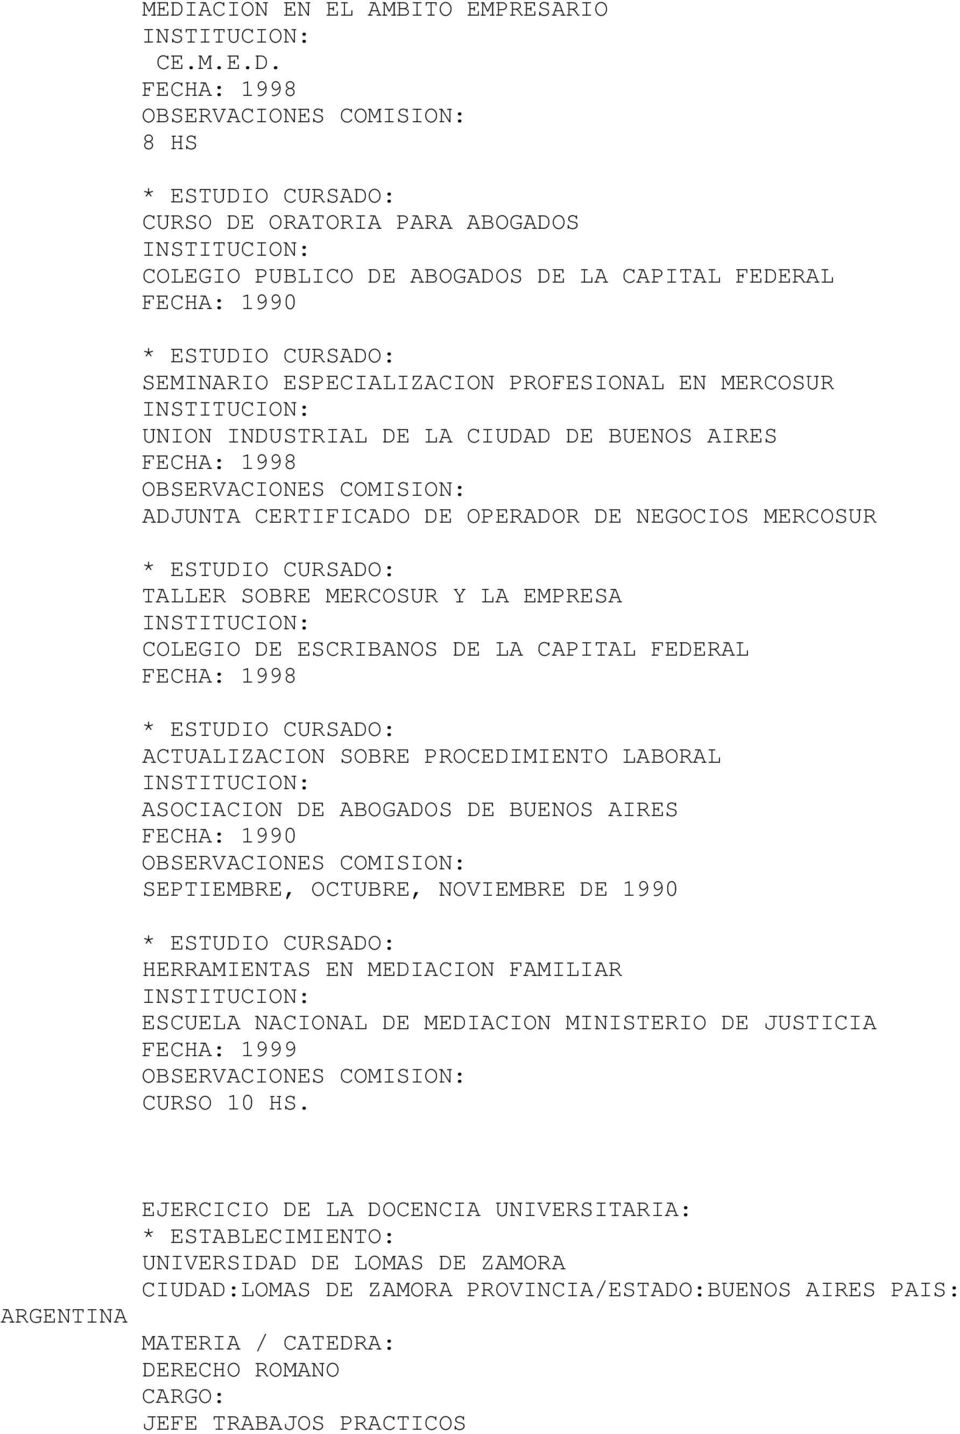 FECHA: 1998 ACTUALIZACION SOBRE PROCEDIMIENTO LABORAL ASOCIACION DE ABOGADOS DE BUENOS AIRES FECHA: 1990 SEPTIEMBRE, OCTUBRE, NOVIEMBRE DE 1990 HERRAMIENTAS EN MEDIACION FAMILIAR ESCUELA NACIONAL DE